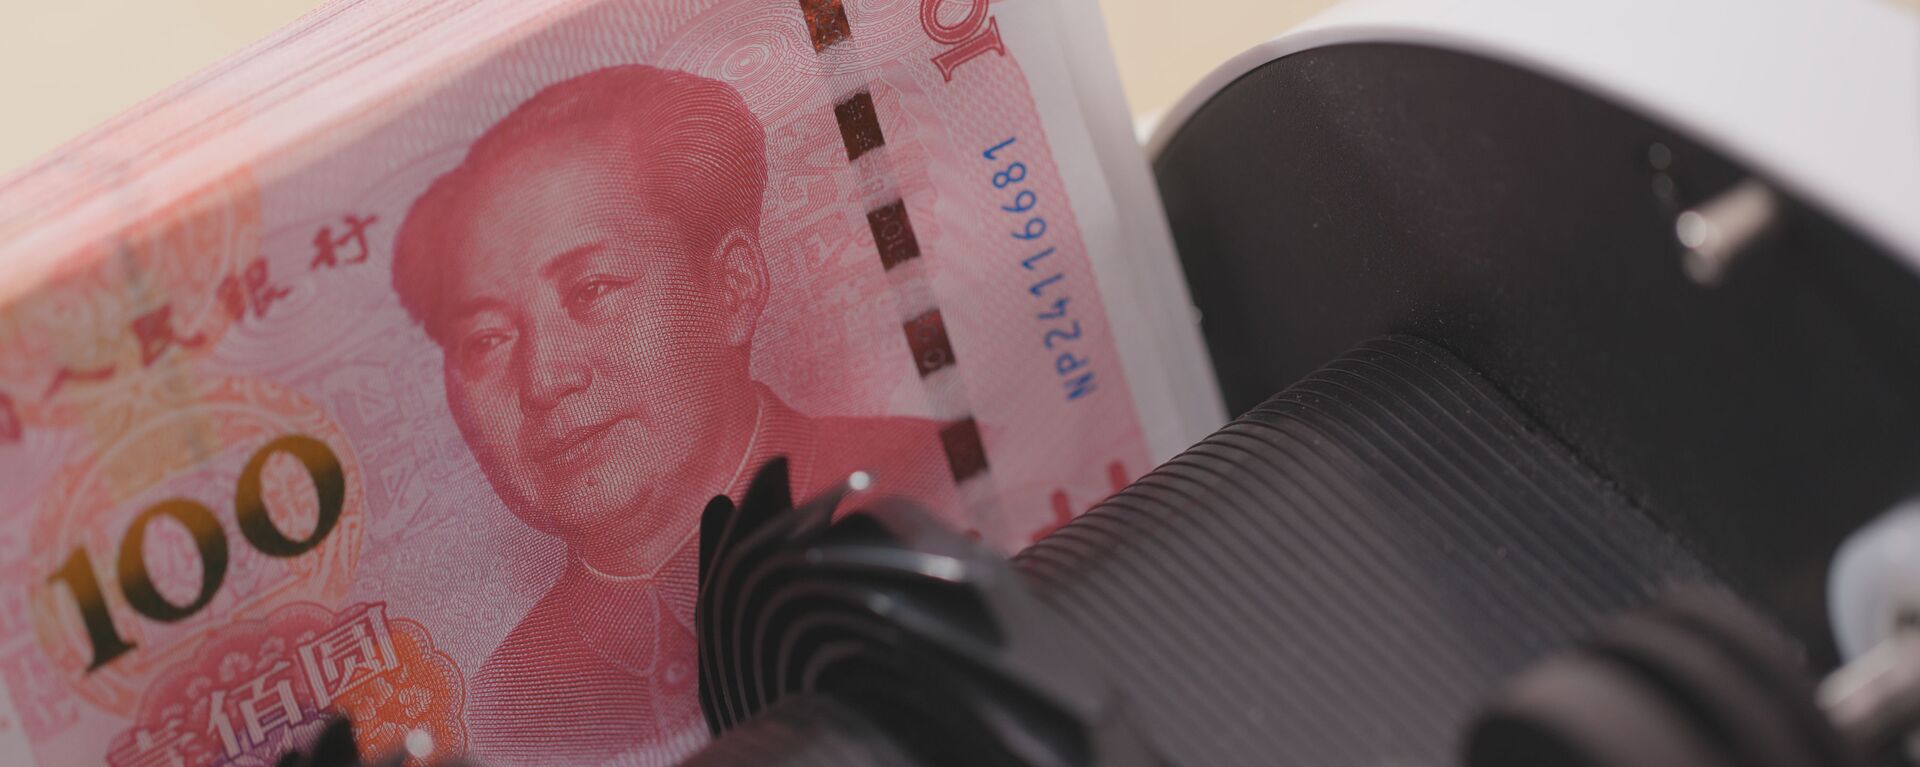 Счетчик денег проверяет номера банкнот пачки китайских юаней - Sputnik Việt Nam, 1920, 01.12.2020